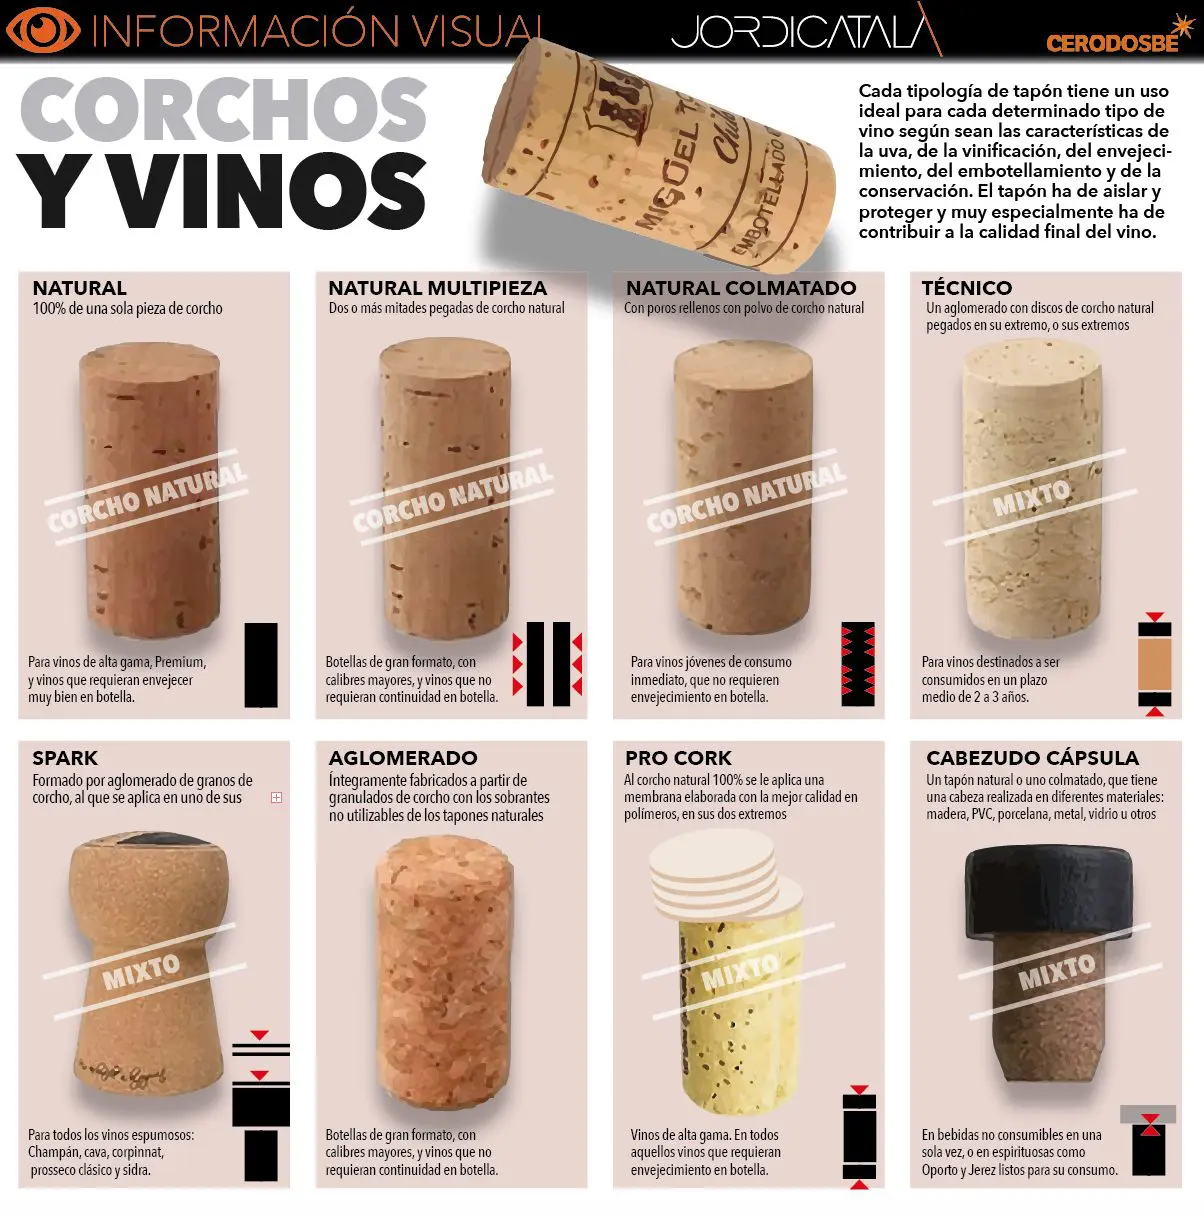 Tipos de corchos y usos en el vino